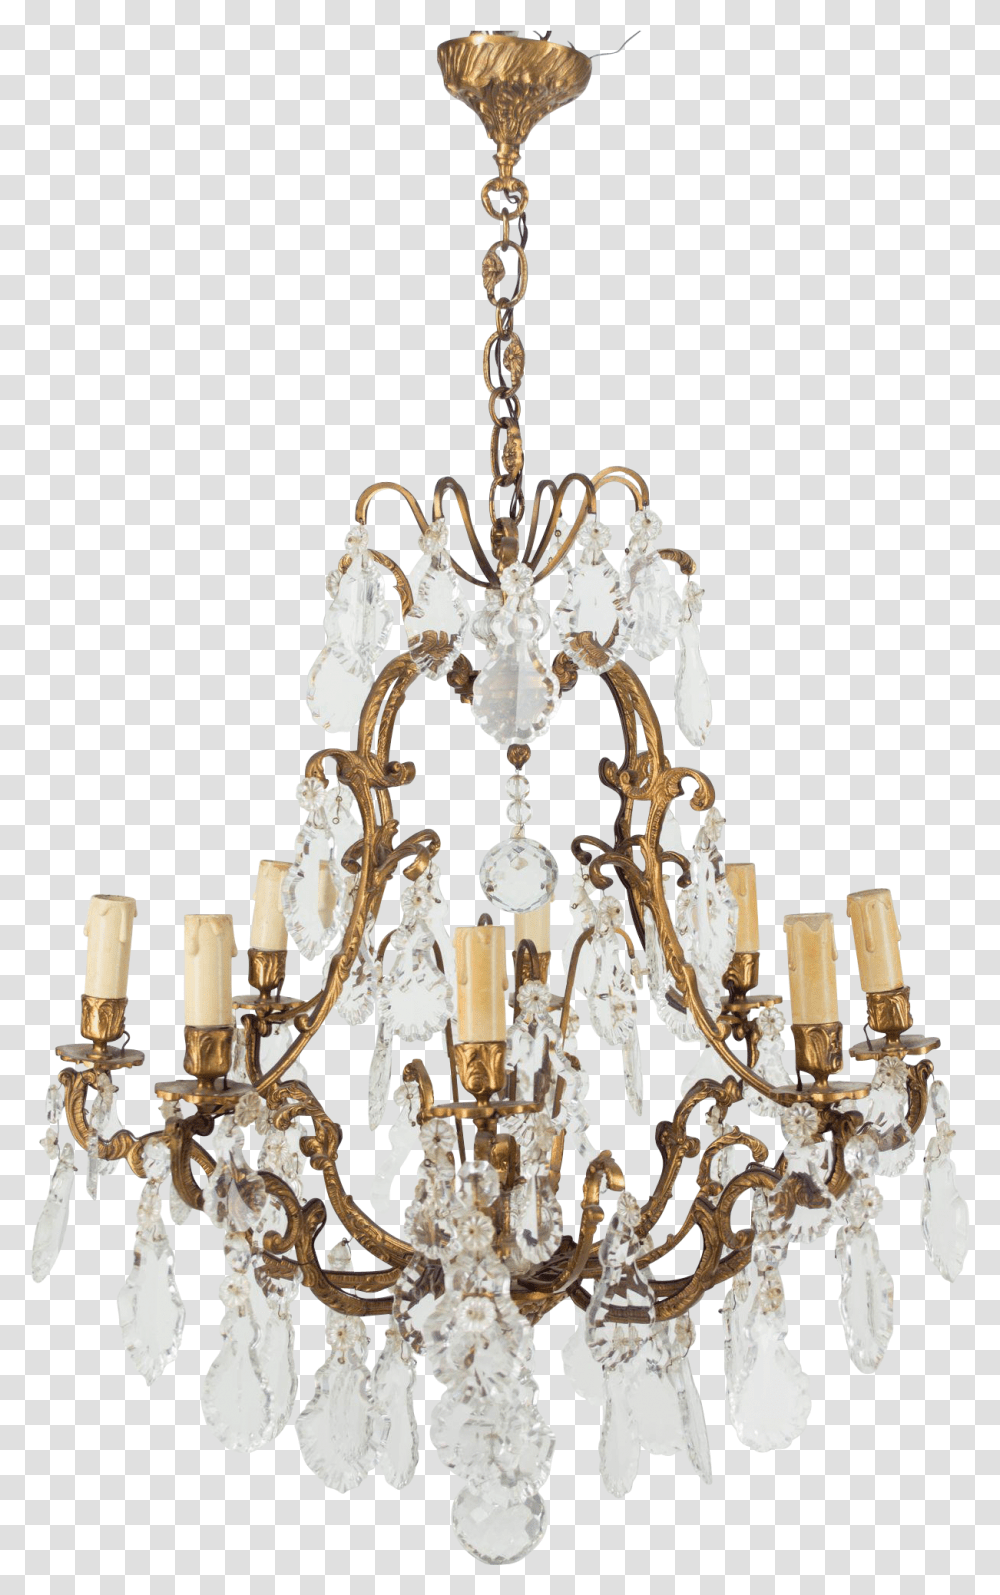 Chandelier Chandelier, Lamp, Lighting, Crystal Transparent Png